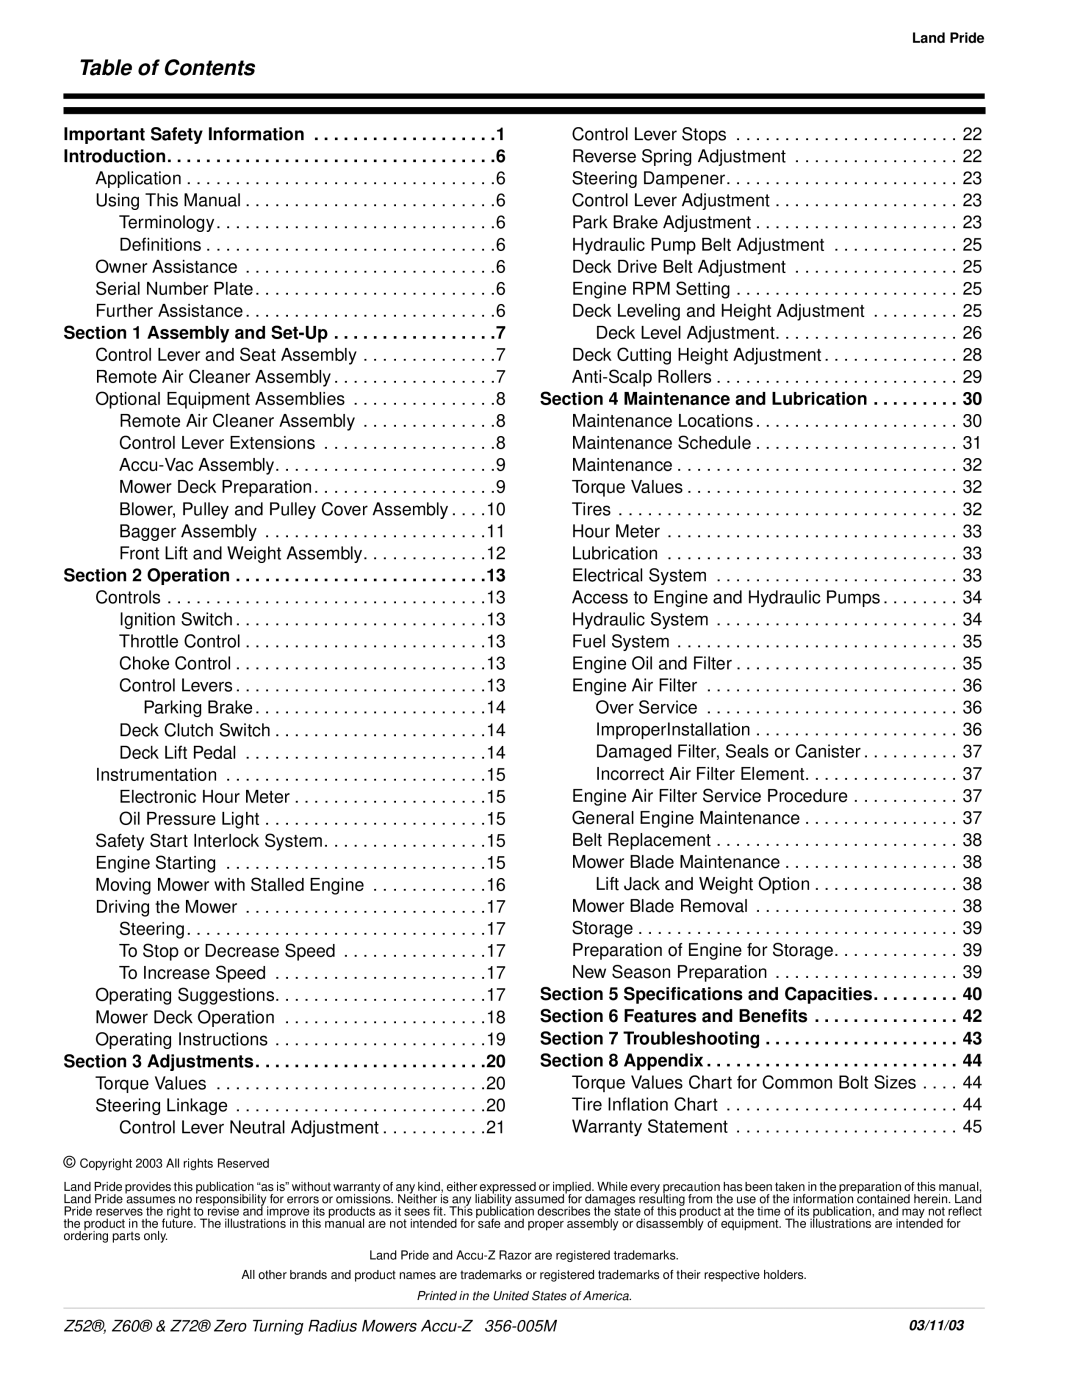 Land Pride Z52 , Z60, Z72 manual Table of Contents 